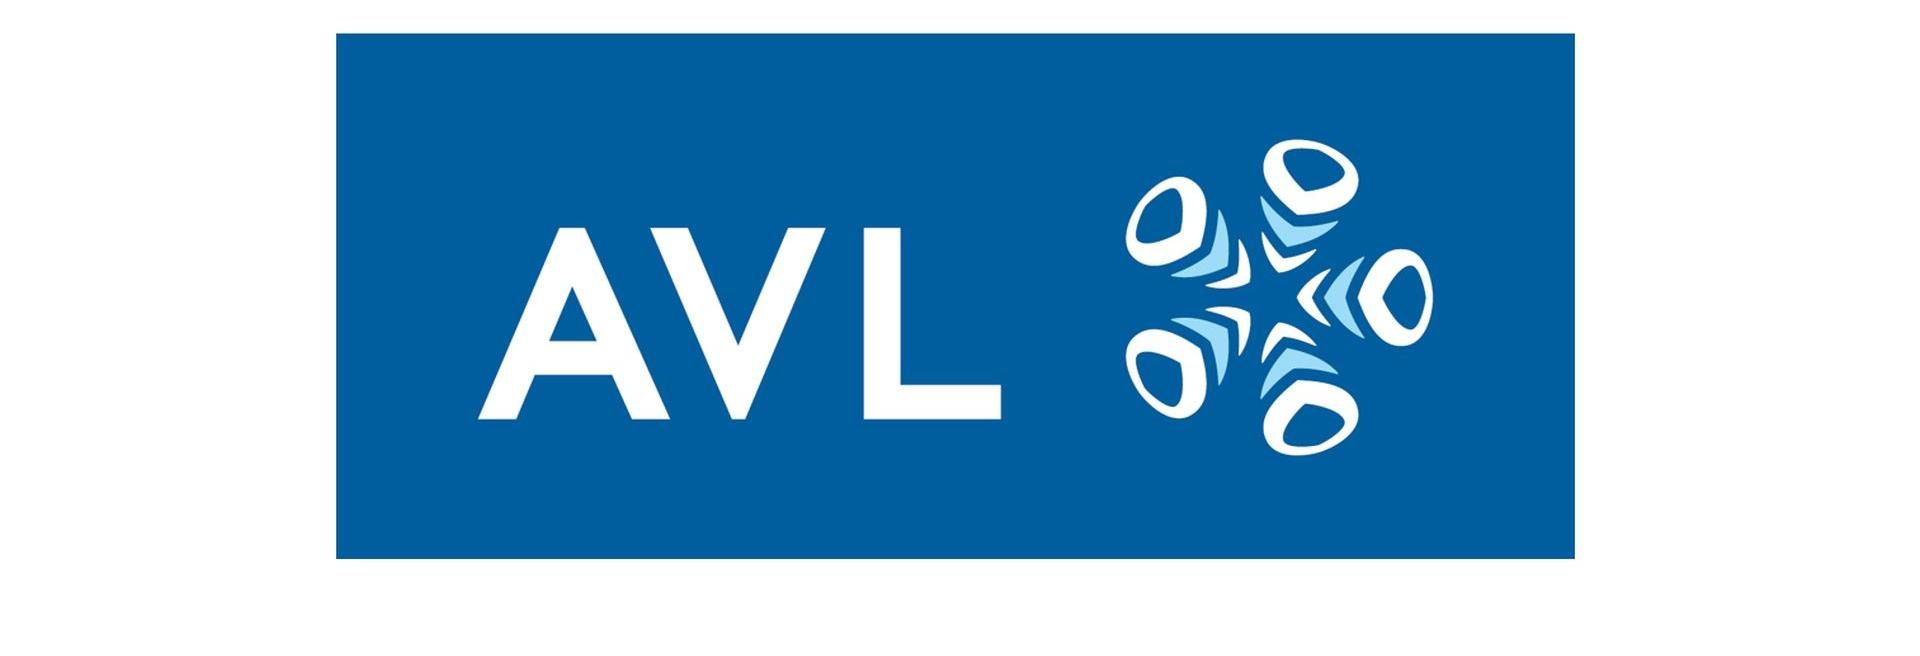 Új járműcsarnok alapkőletételével folytatódik az AVL Hungary beruházása Érden - VIDEÓRIPORT